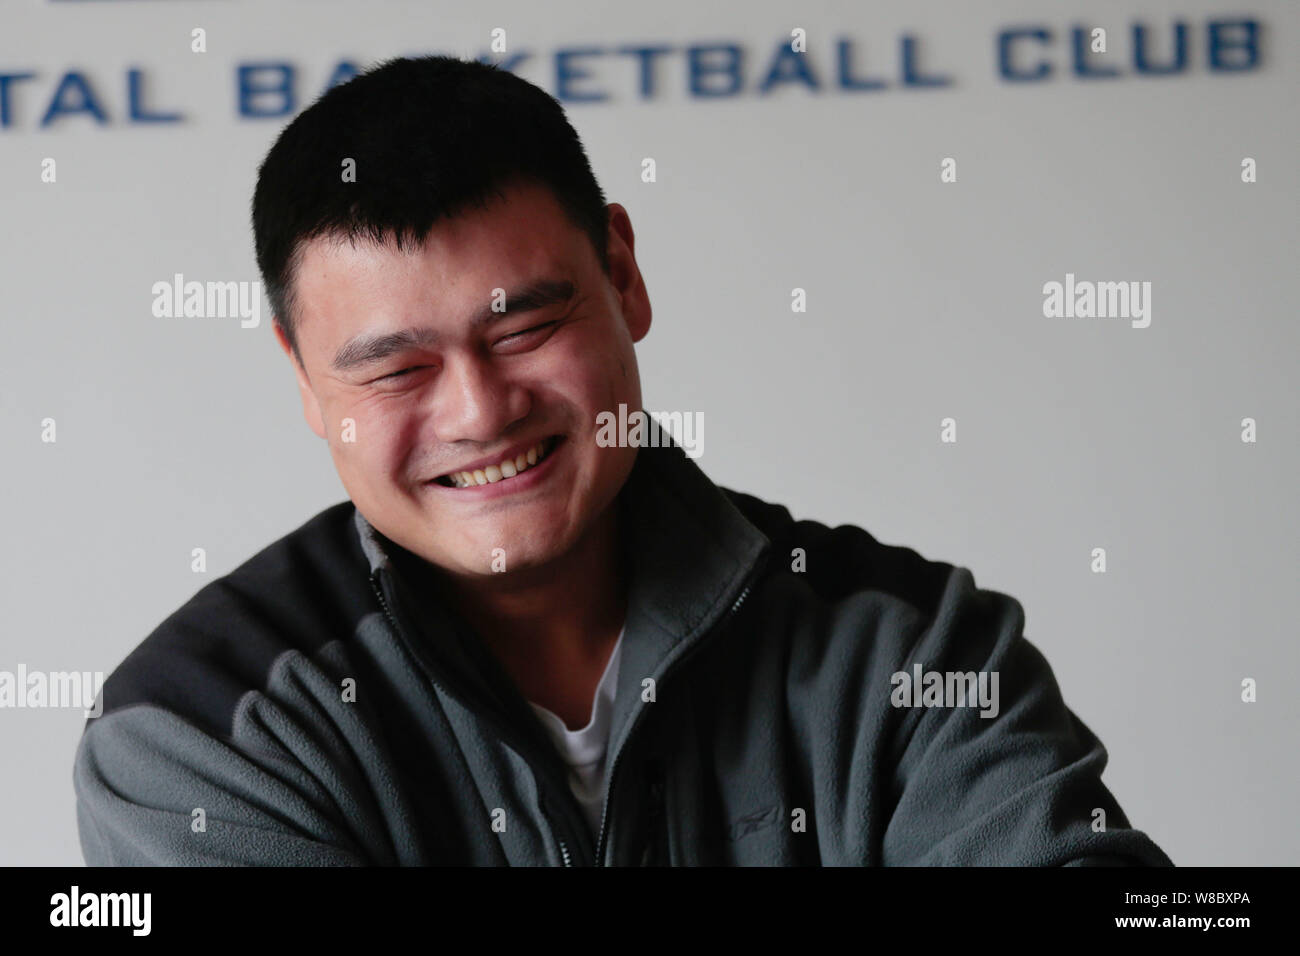 Basket-ball chinois retraités superstar Yao Ming sourit lors d'une entrevue à Shanghai, Chine, le 5 avril 2016. Banque D'Images